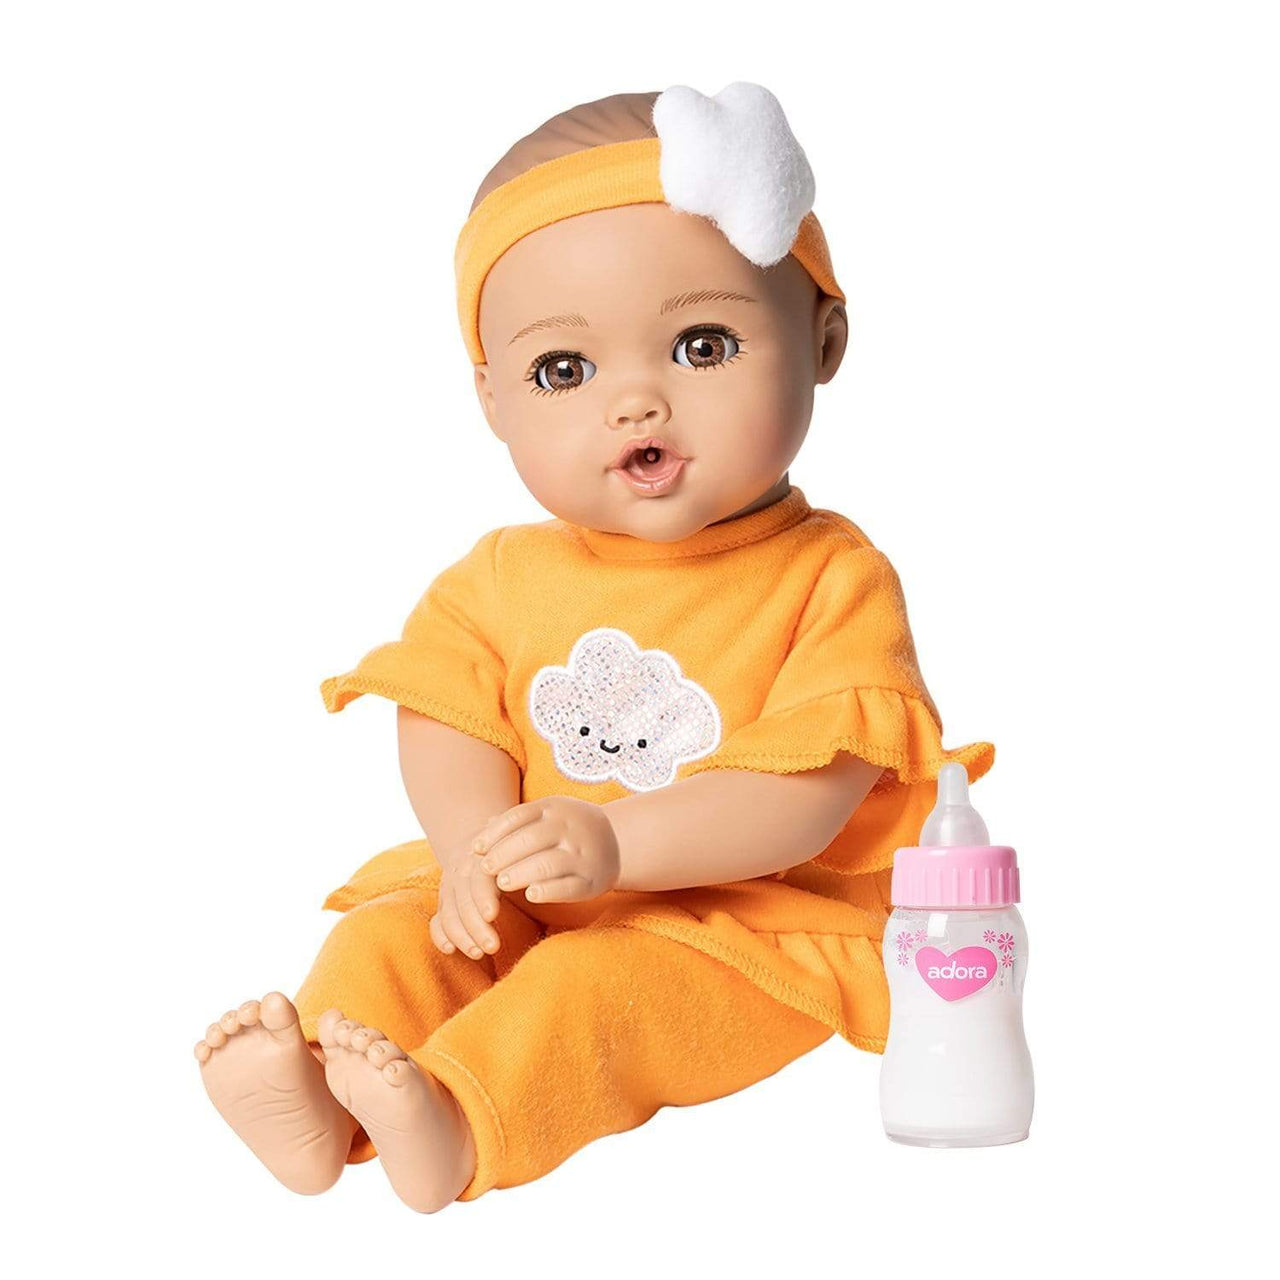 Adora NurtureTime Interactive Baby Doll, Clothes, & Accessories Set